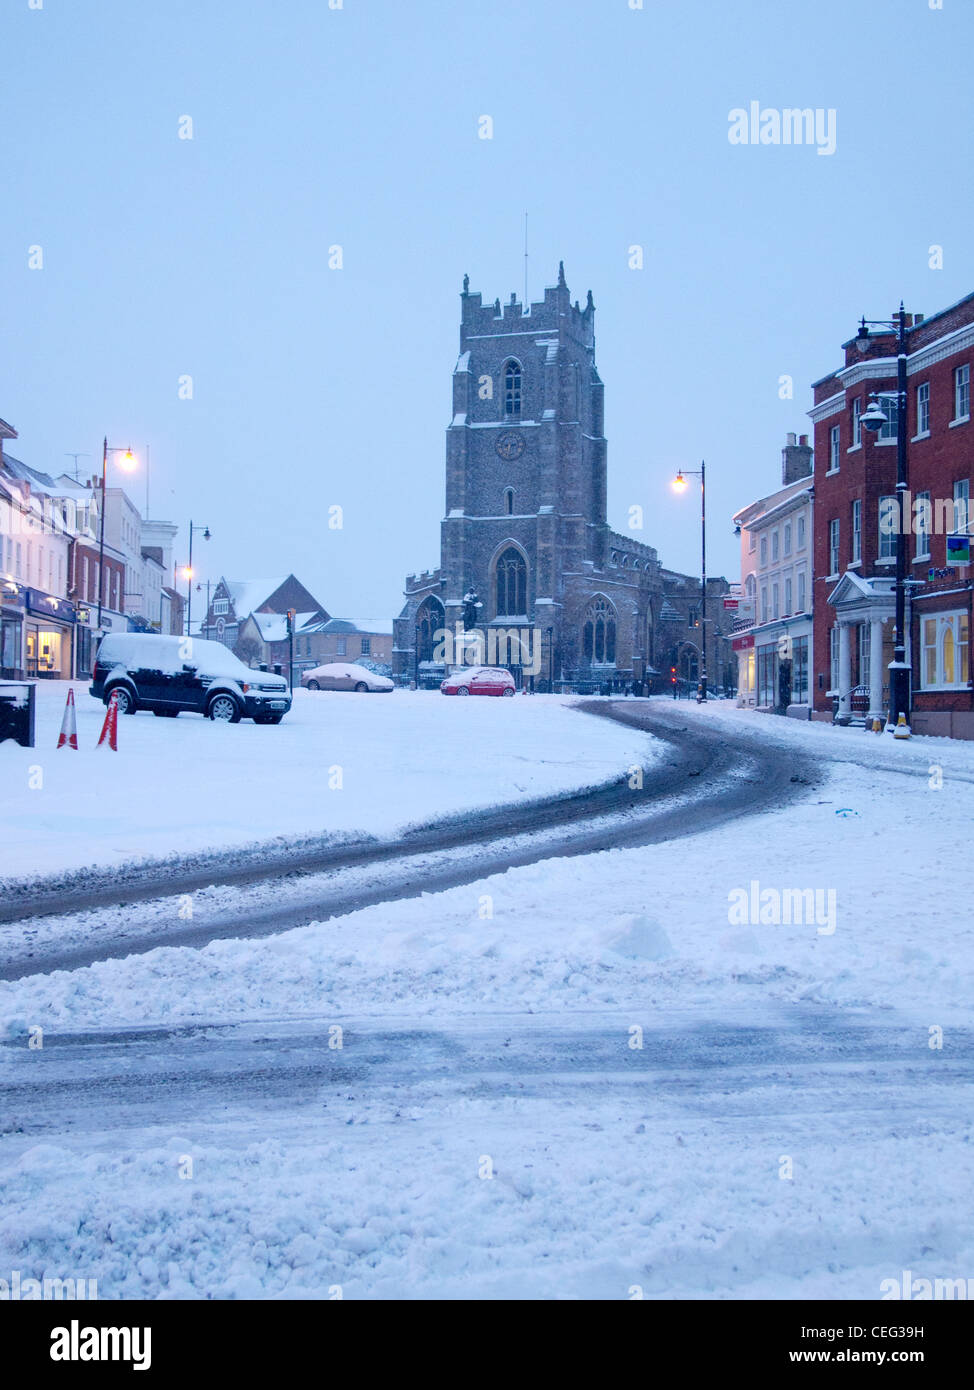 Ein Bild der St. Peter Kirche in Markt Hill, Sudbury, Suffolk, England, im Winter mit Schnee. Stockfoto